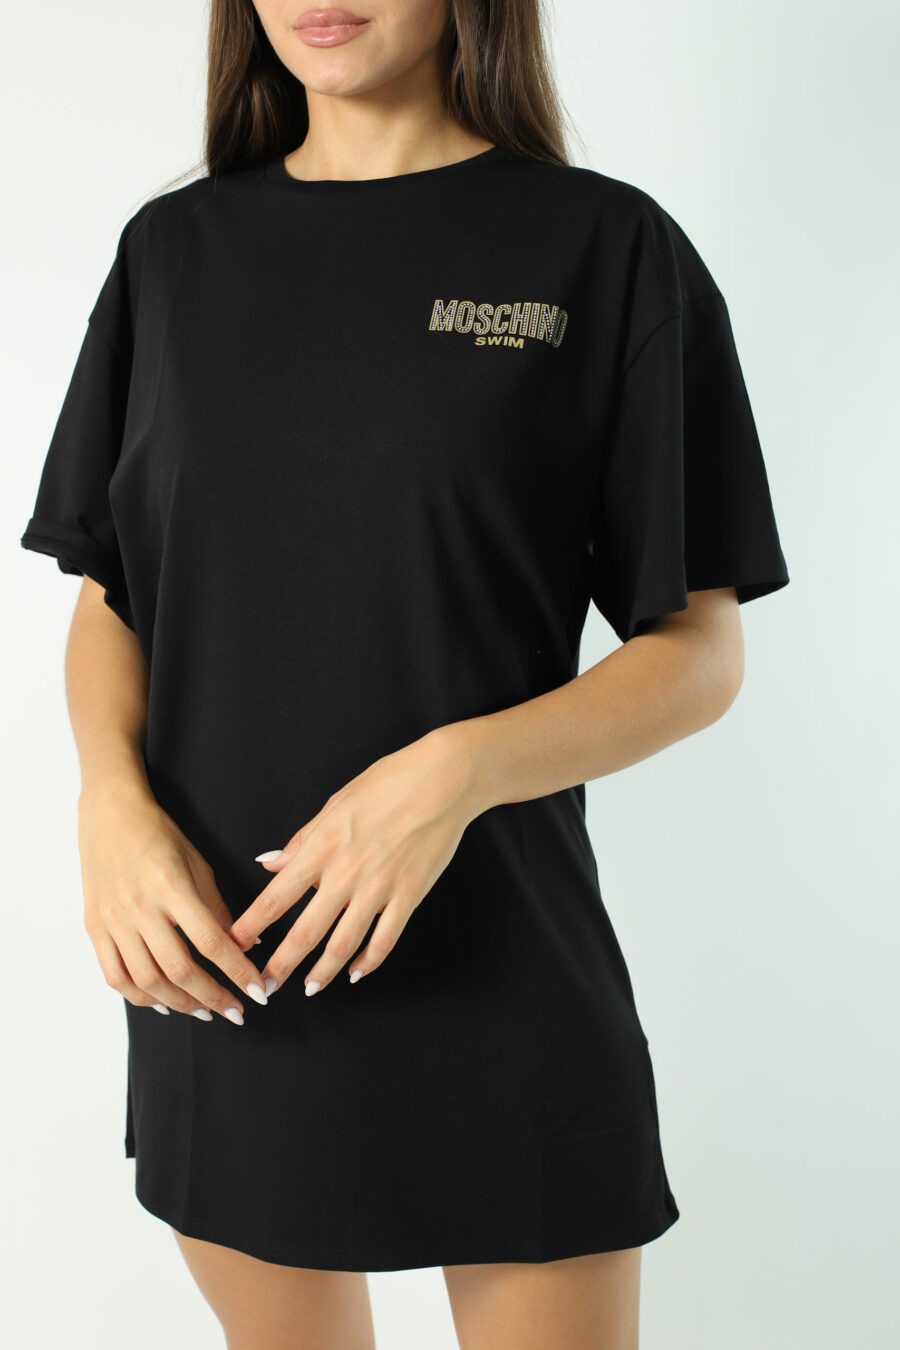 Camiseta maxi negra con minilogo dorado en strass - Photos 2820